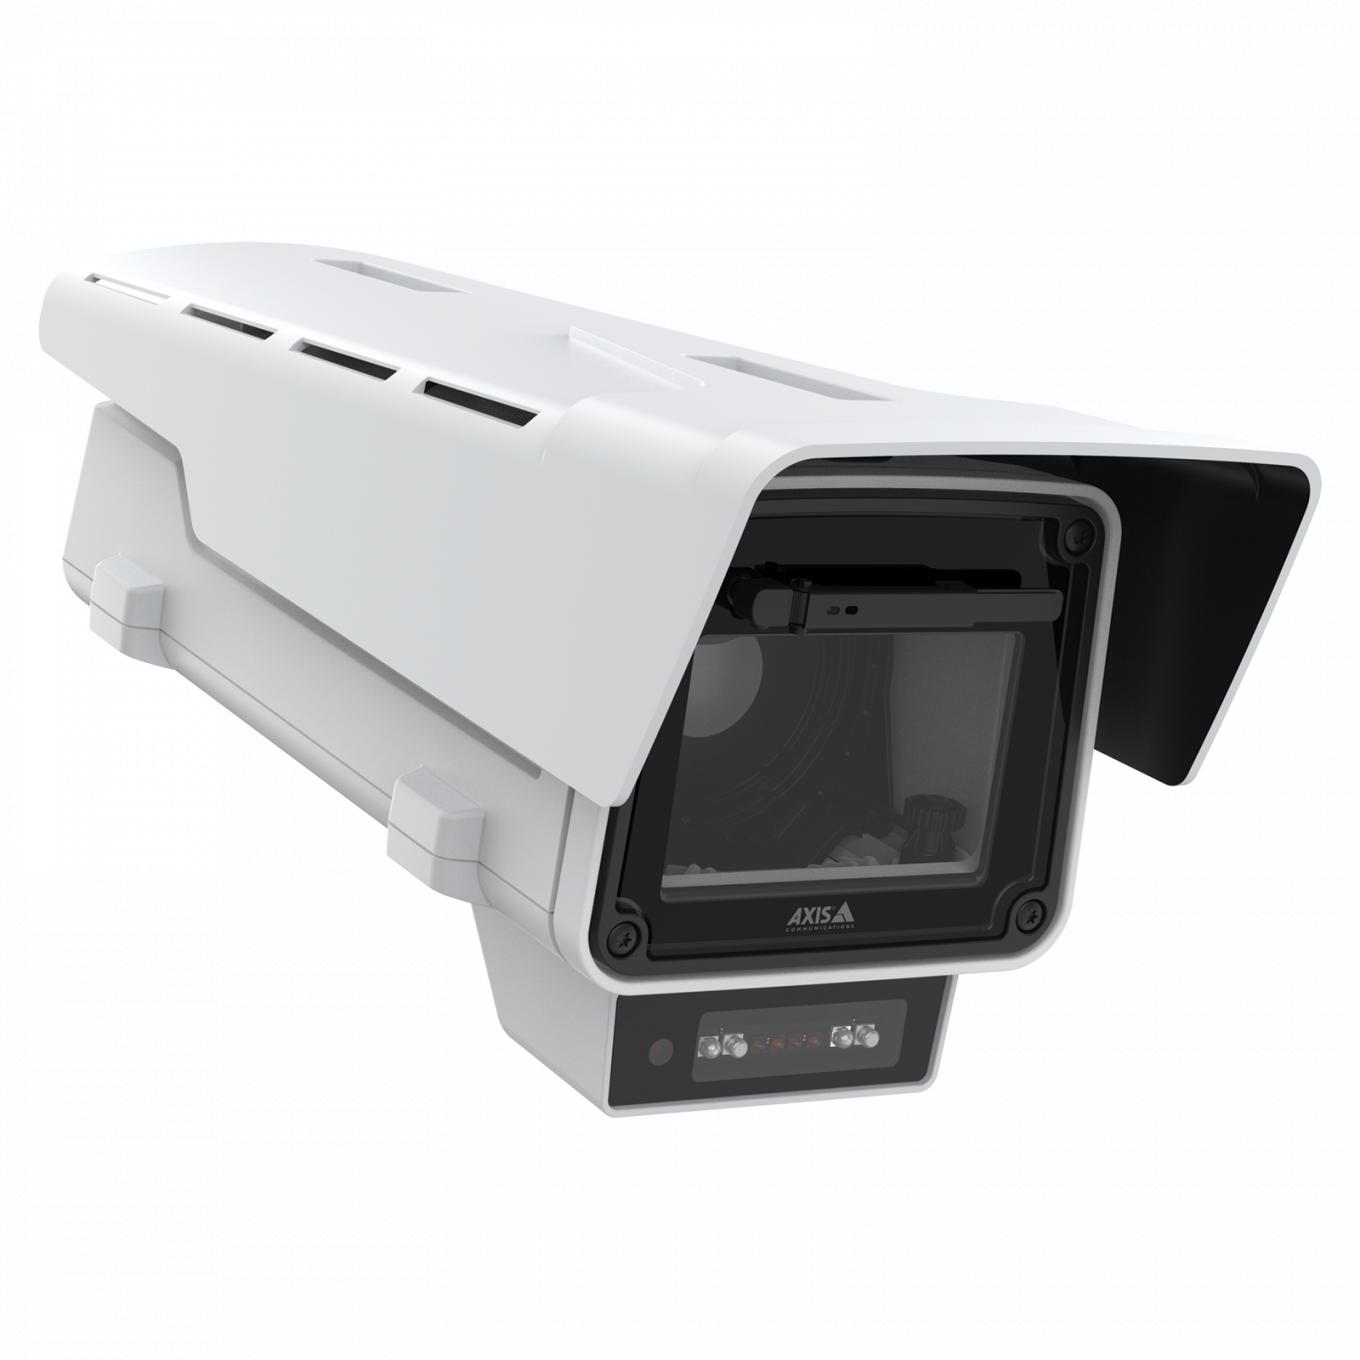 AXIS Q1656-BLE Box Camera、右から見た図